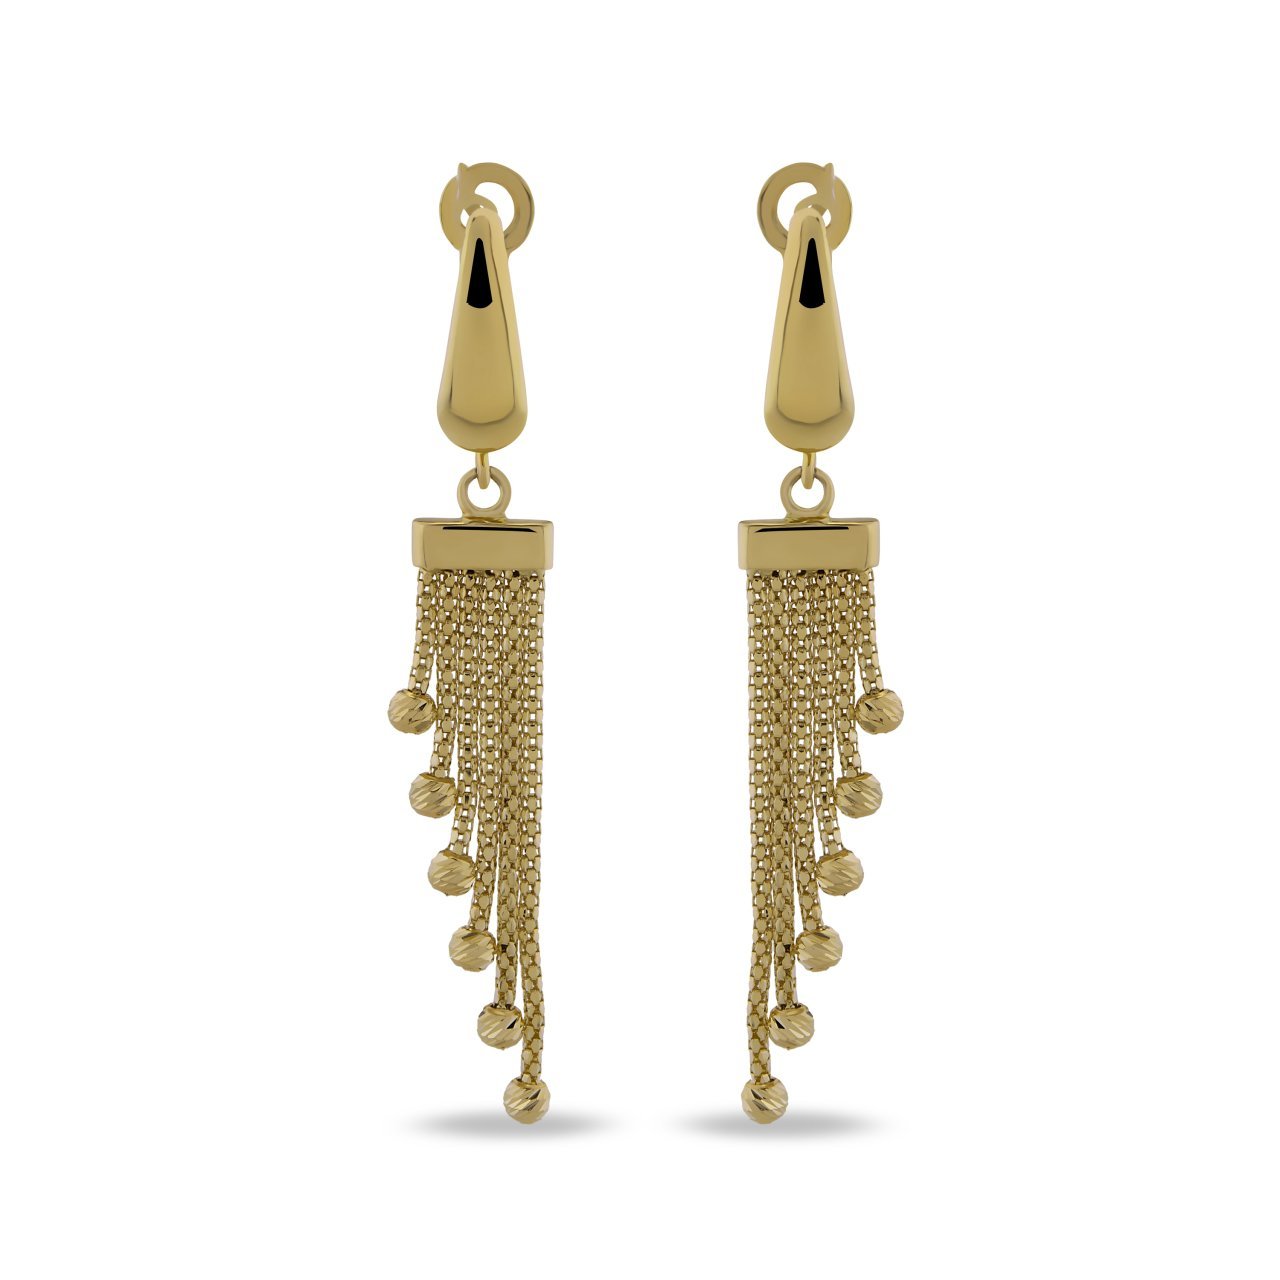 TS 2041 is 3,10g Gold Earrings